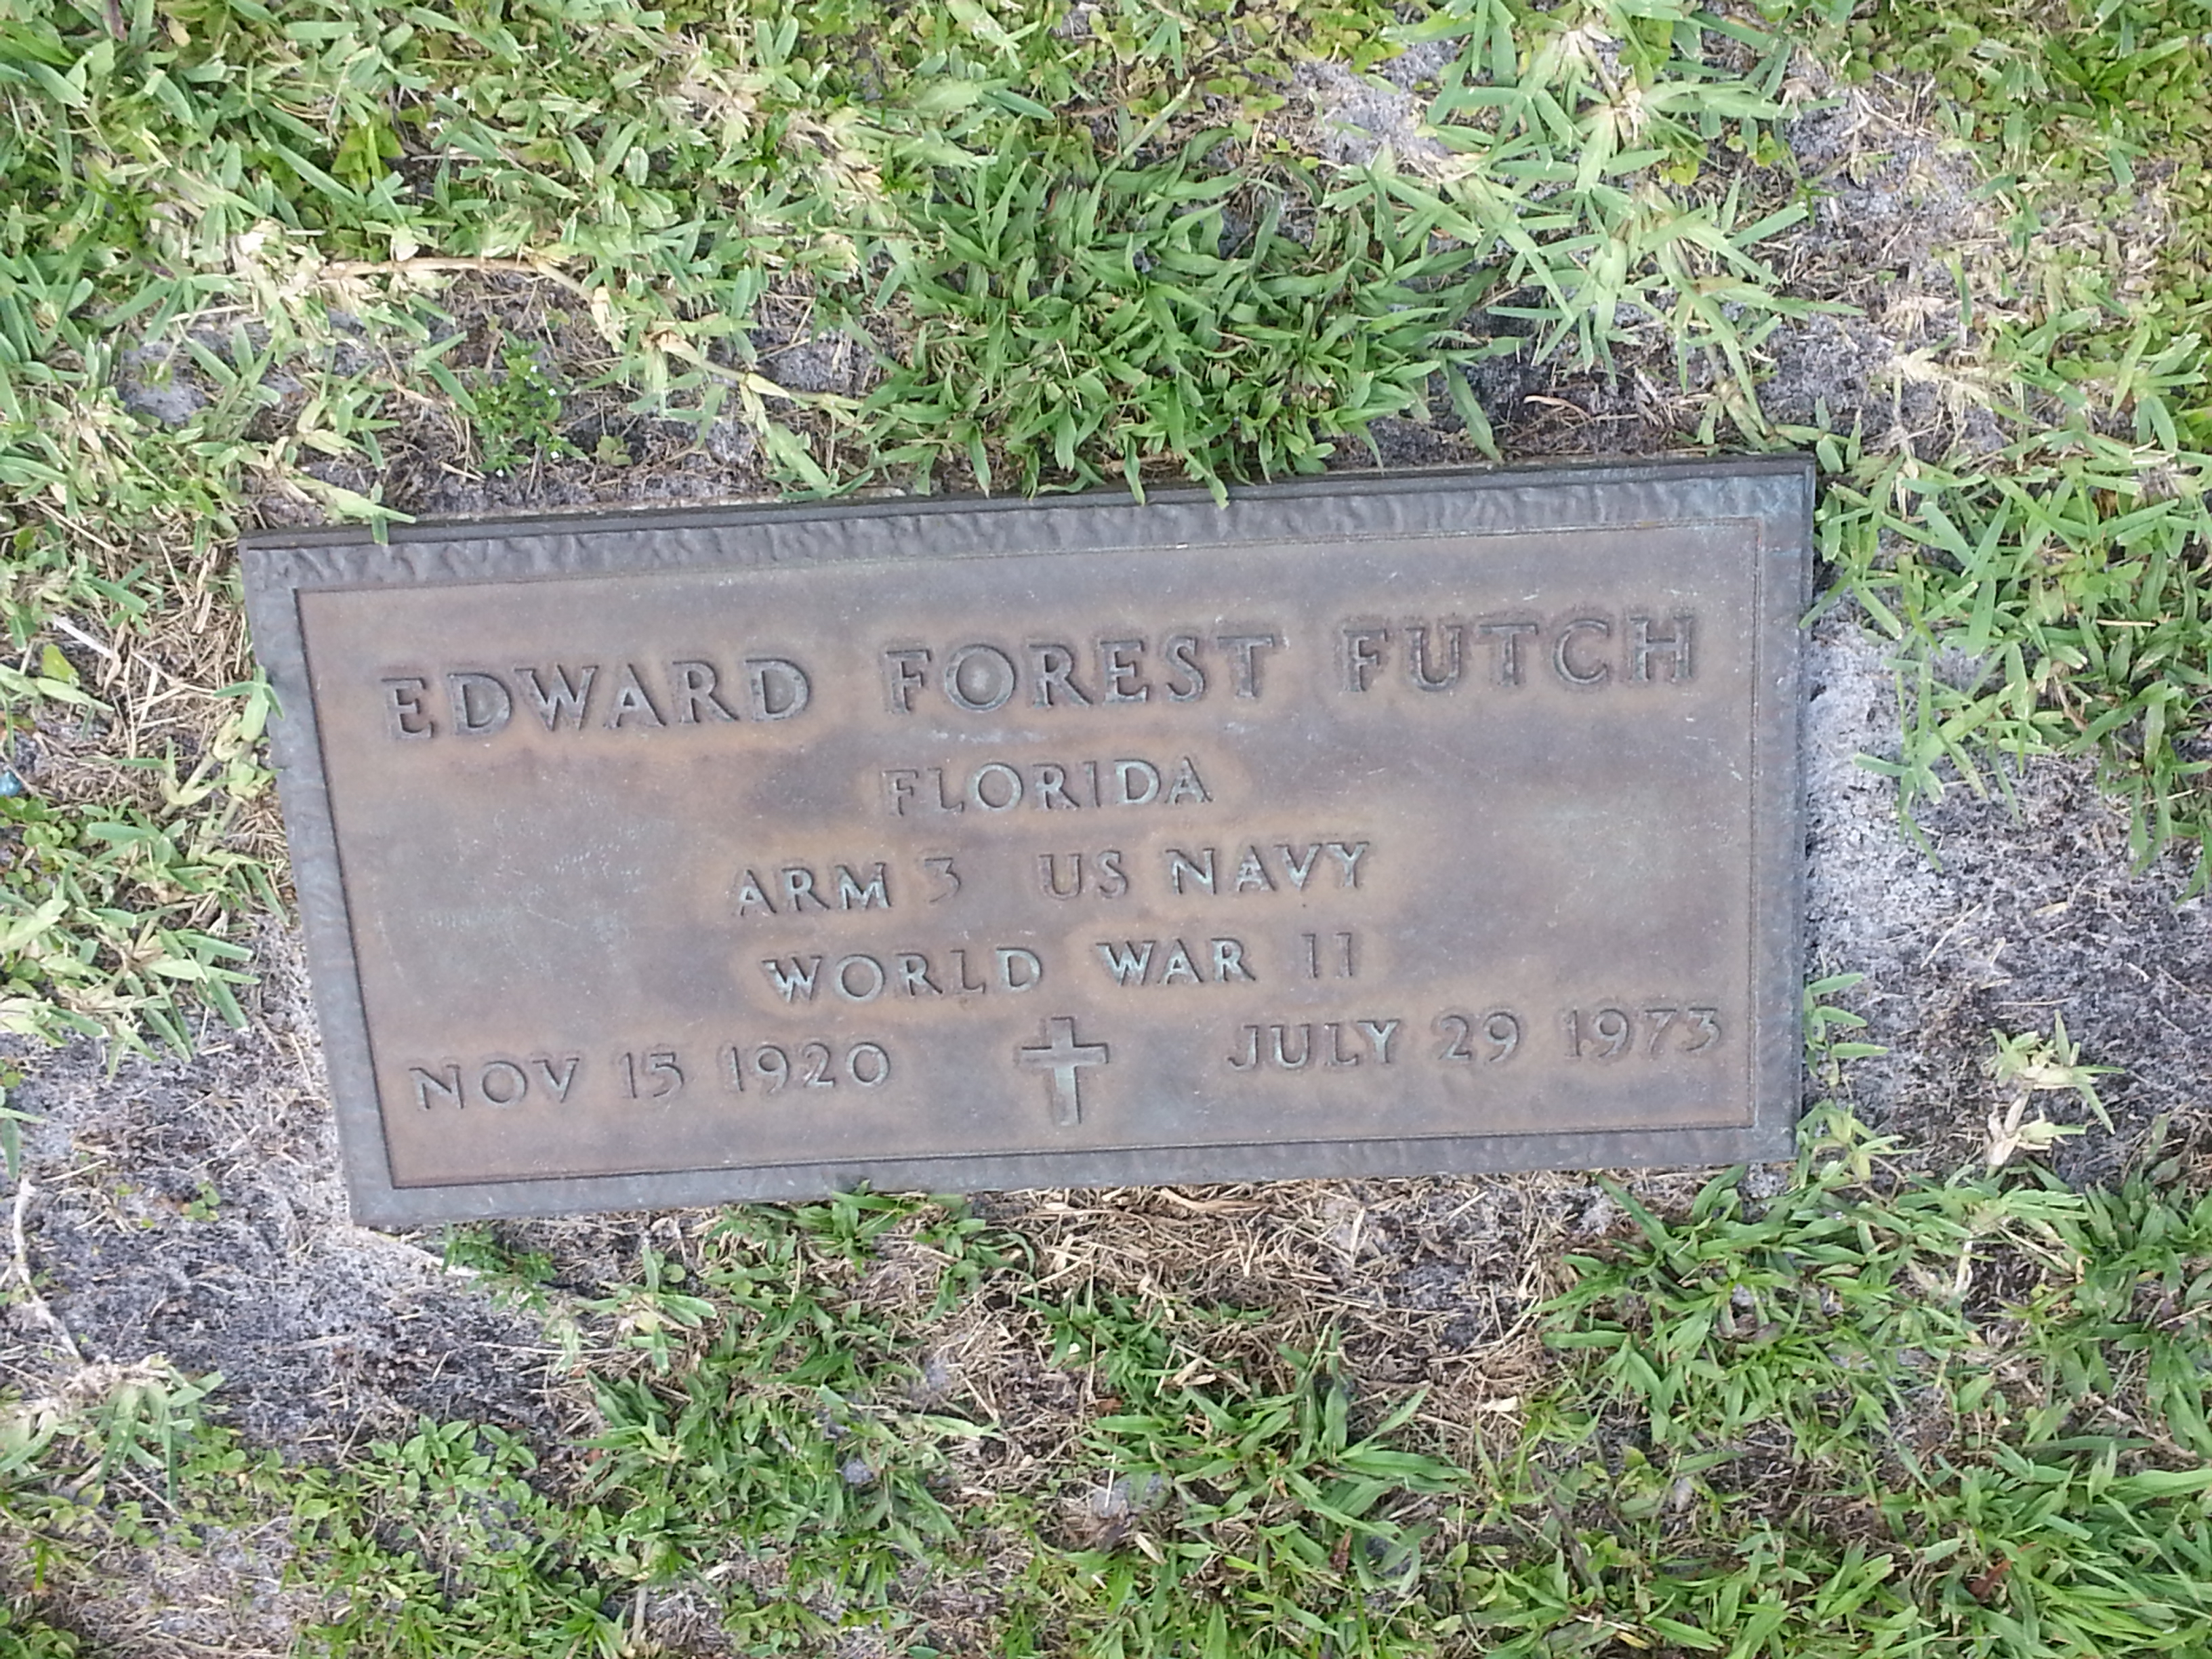 Edward Forest Futch